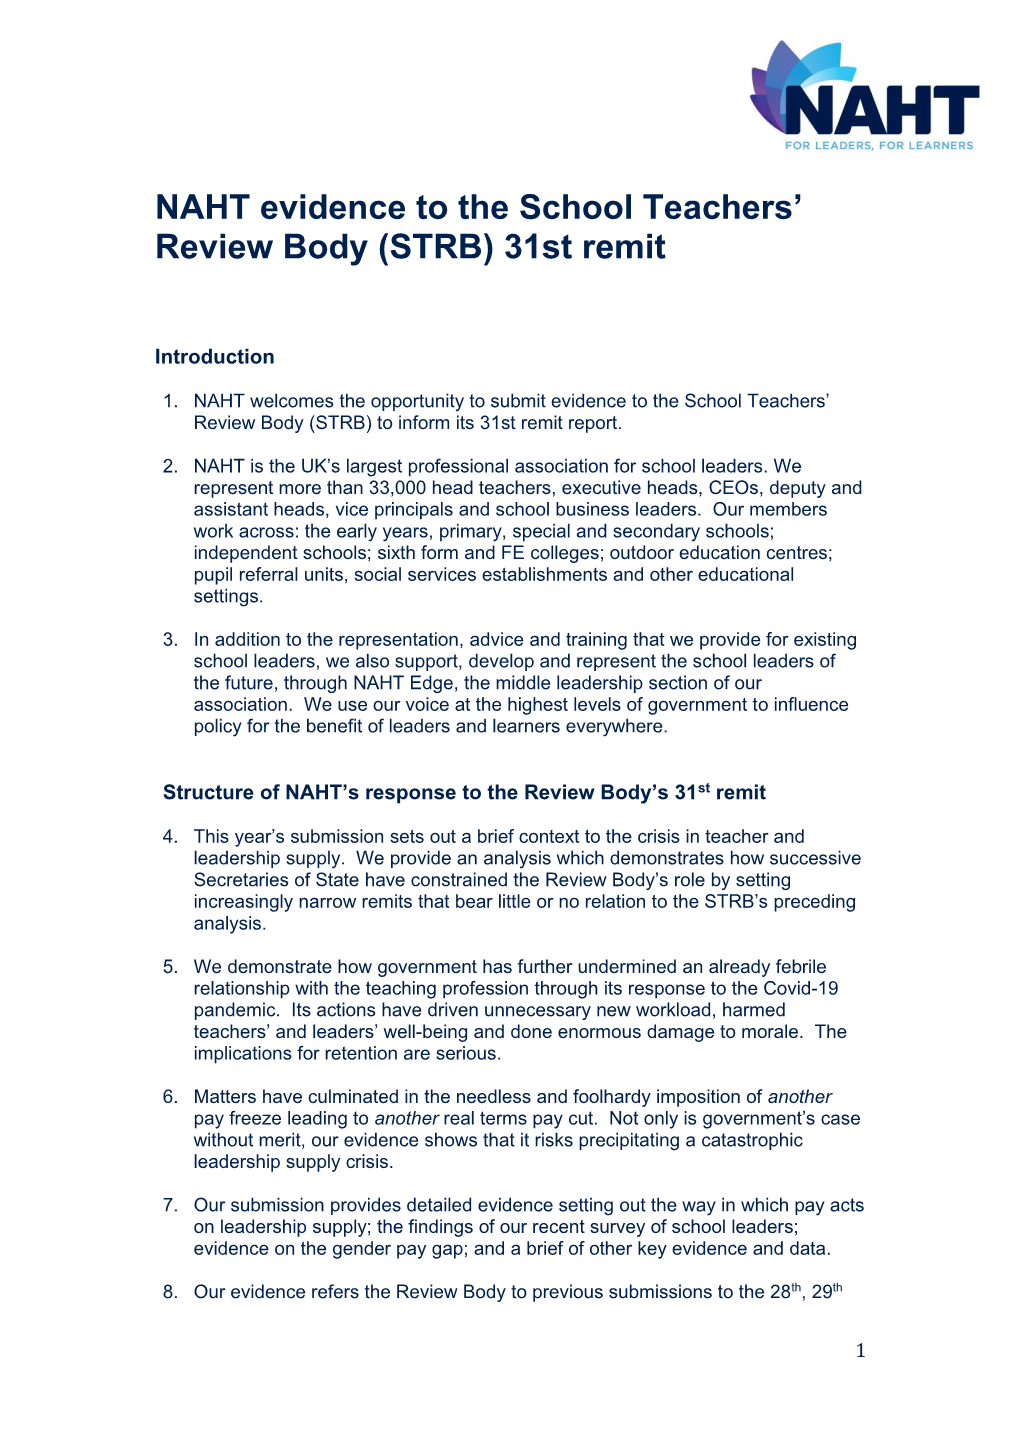 NAHT Evidence to the School Teachers' Review Body (STRB)